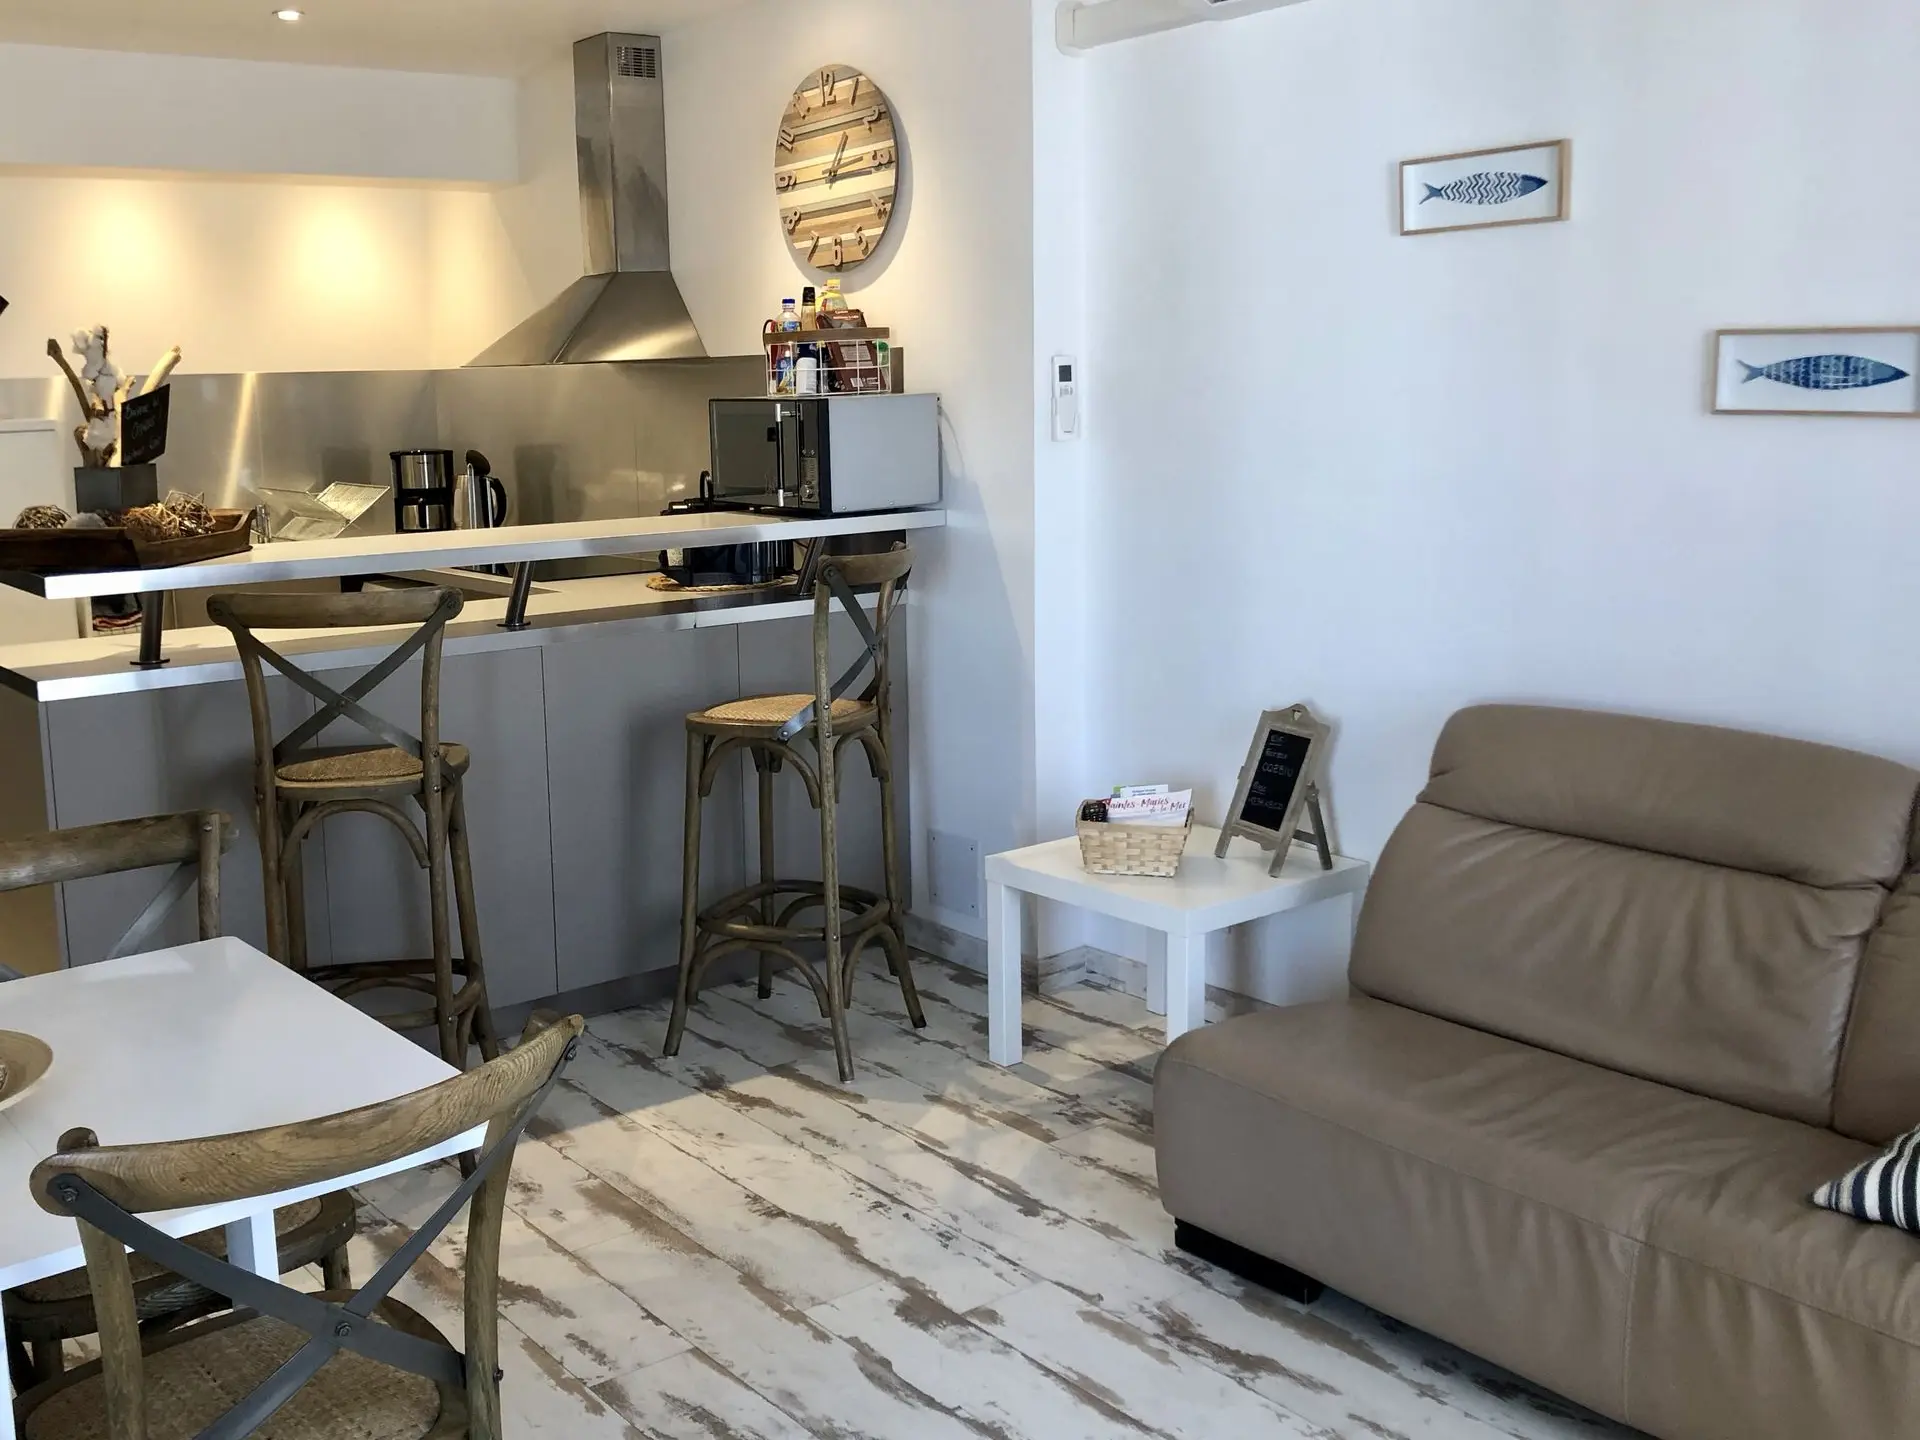 Intérieur élégant et moderne d’un appartement de vacances à Loc’Amargue, Saintes-Maries-de-la-Mer, avec une cuisine bien équipée et un coin salon confortable.